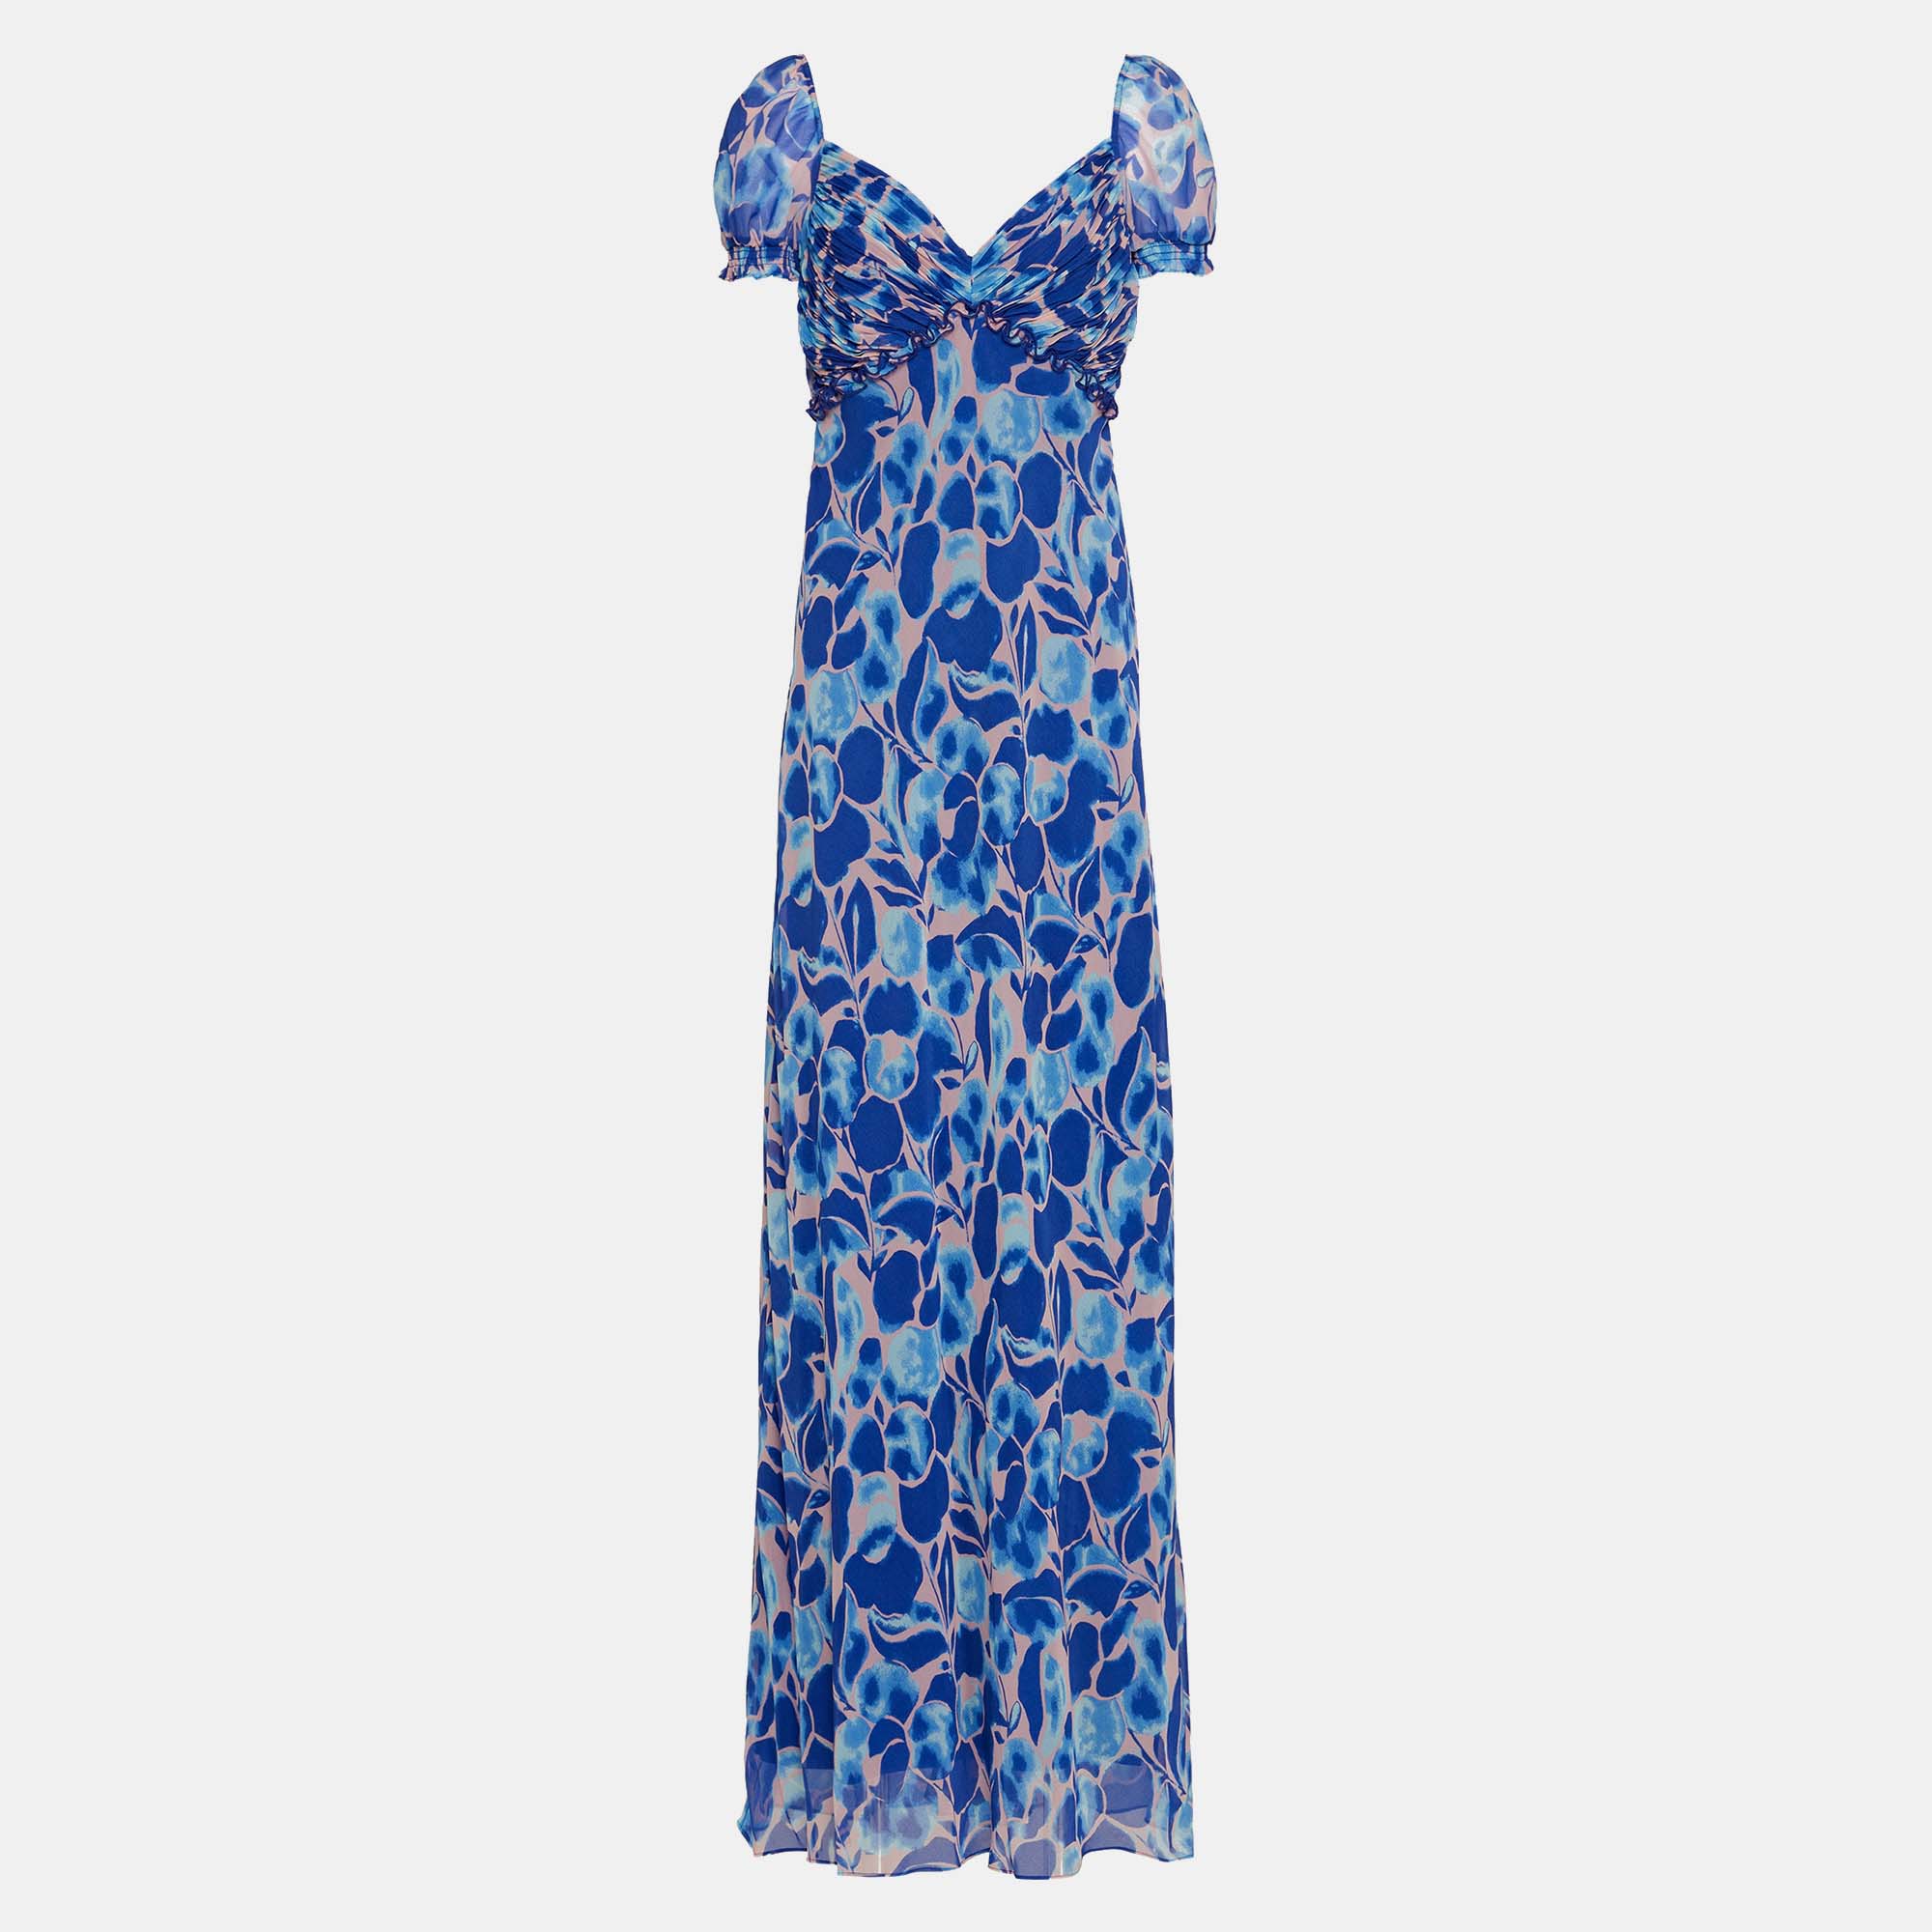 Diane von furstenberg blue/pink printed chiffon maxi dress xxl (us 12)